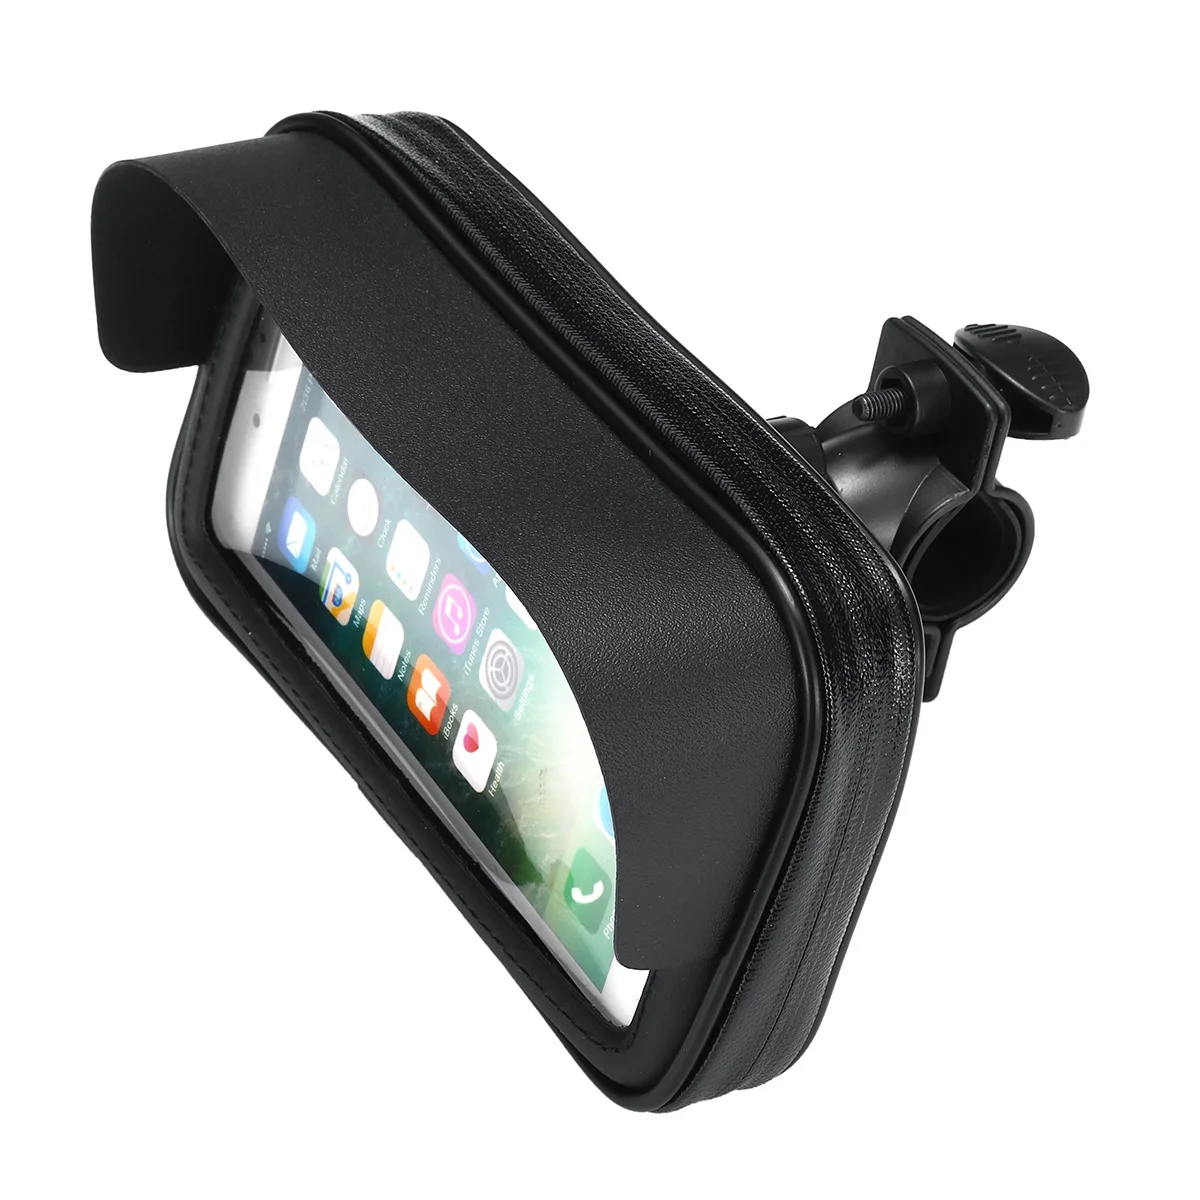 6,3 дюймов водонепроницаемый велосипедный держатель для телефона MTB велосипедный держатель для телефона чехол для мотоцикла крепление для samsung для iPhone для LG V20/mate